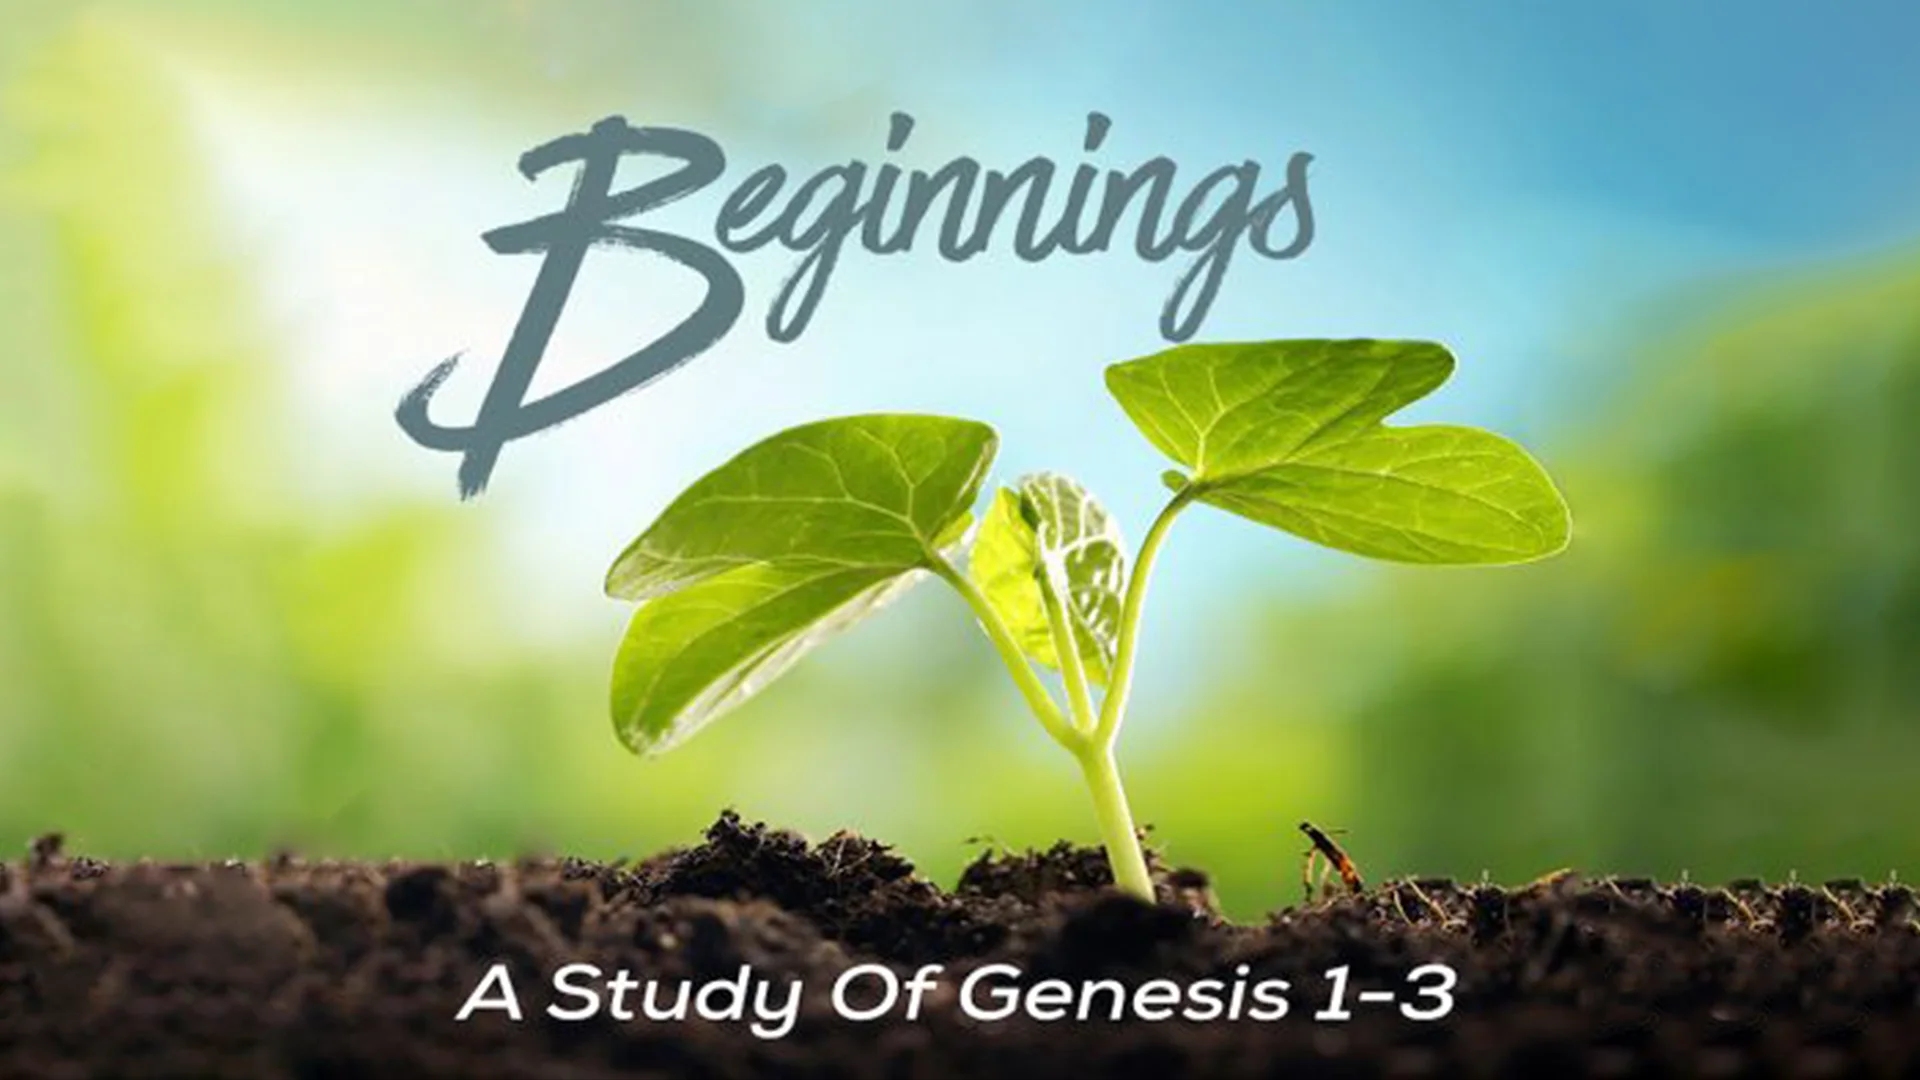 Beginnings: A Study of Genesis 1-3